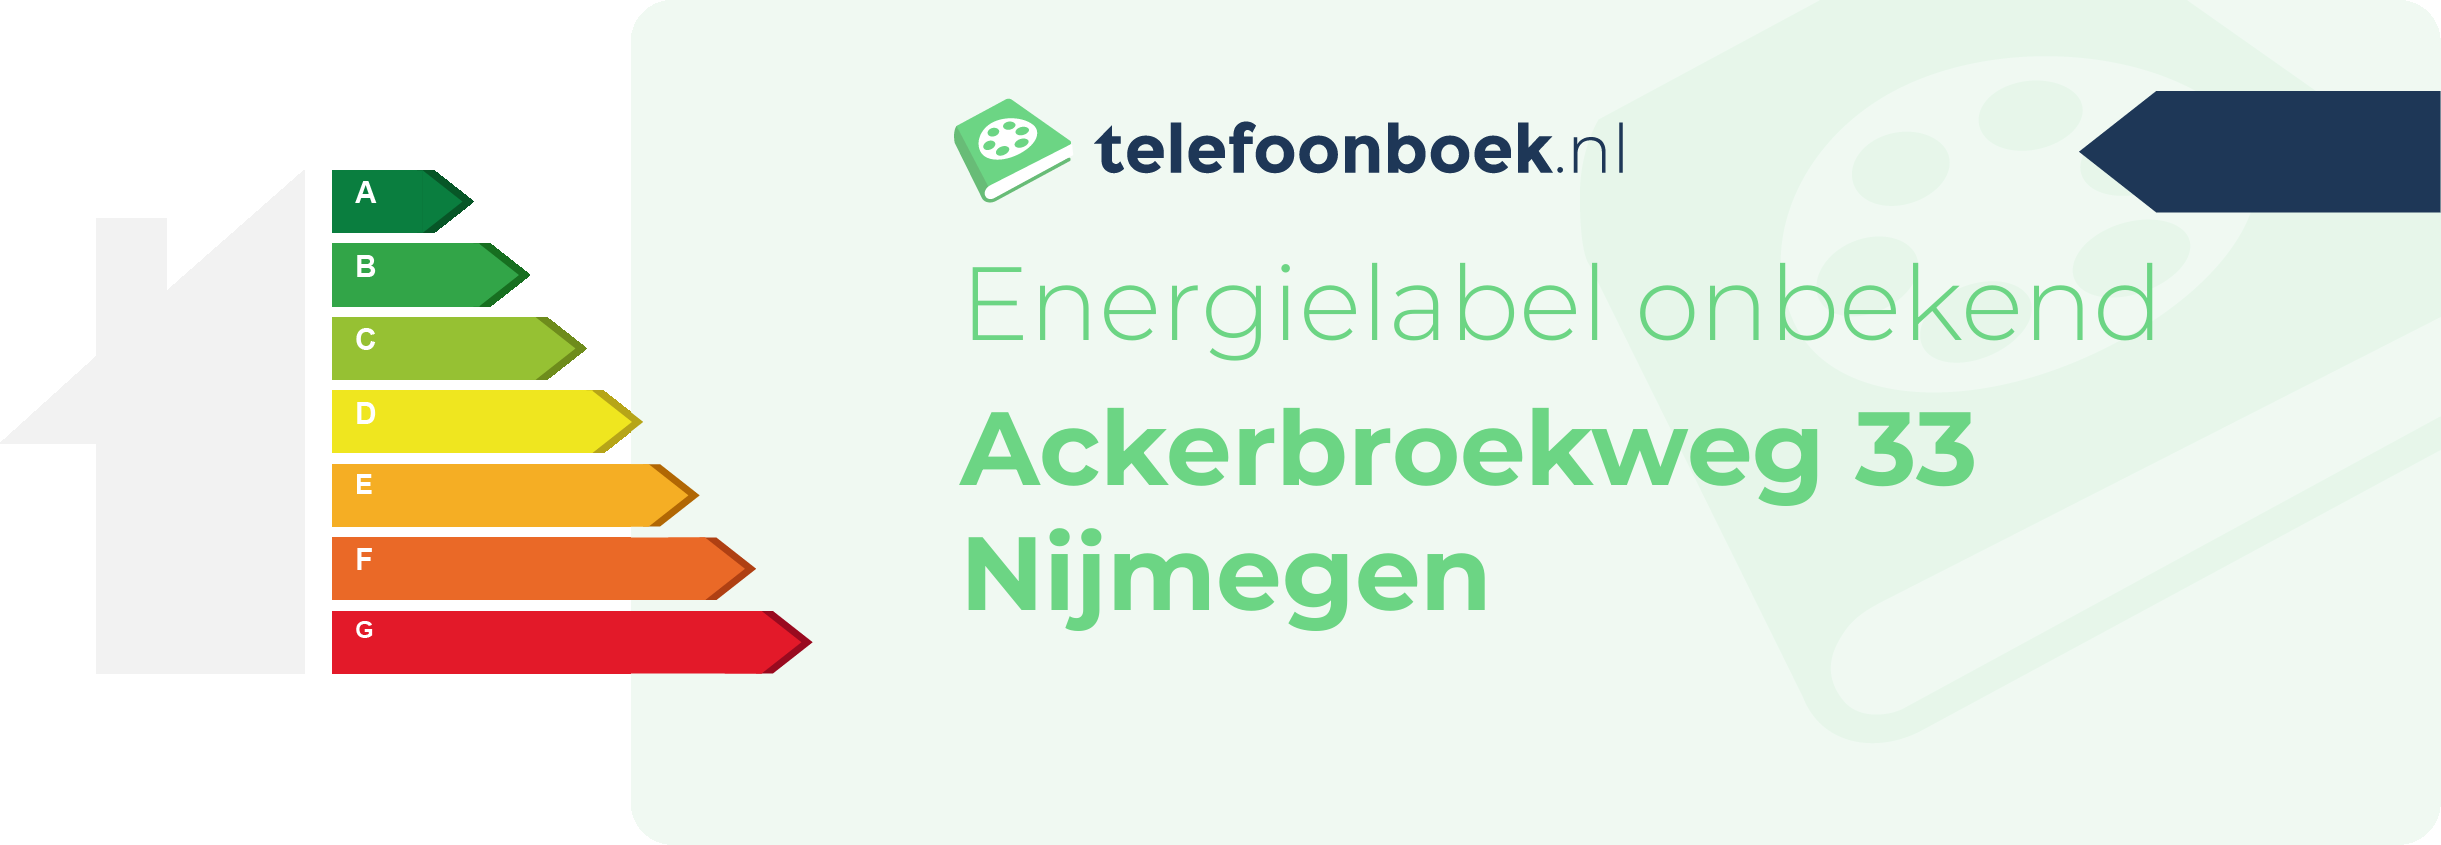 Energielabel Ackerbroekweg 33 Nijmegen